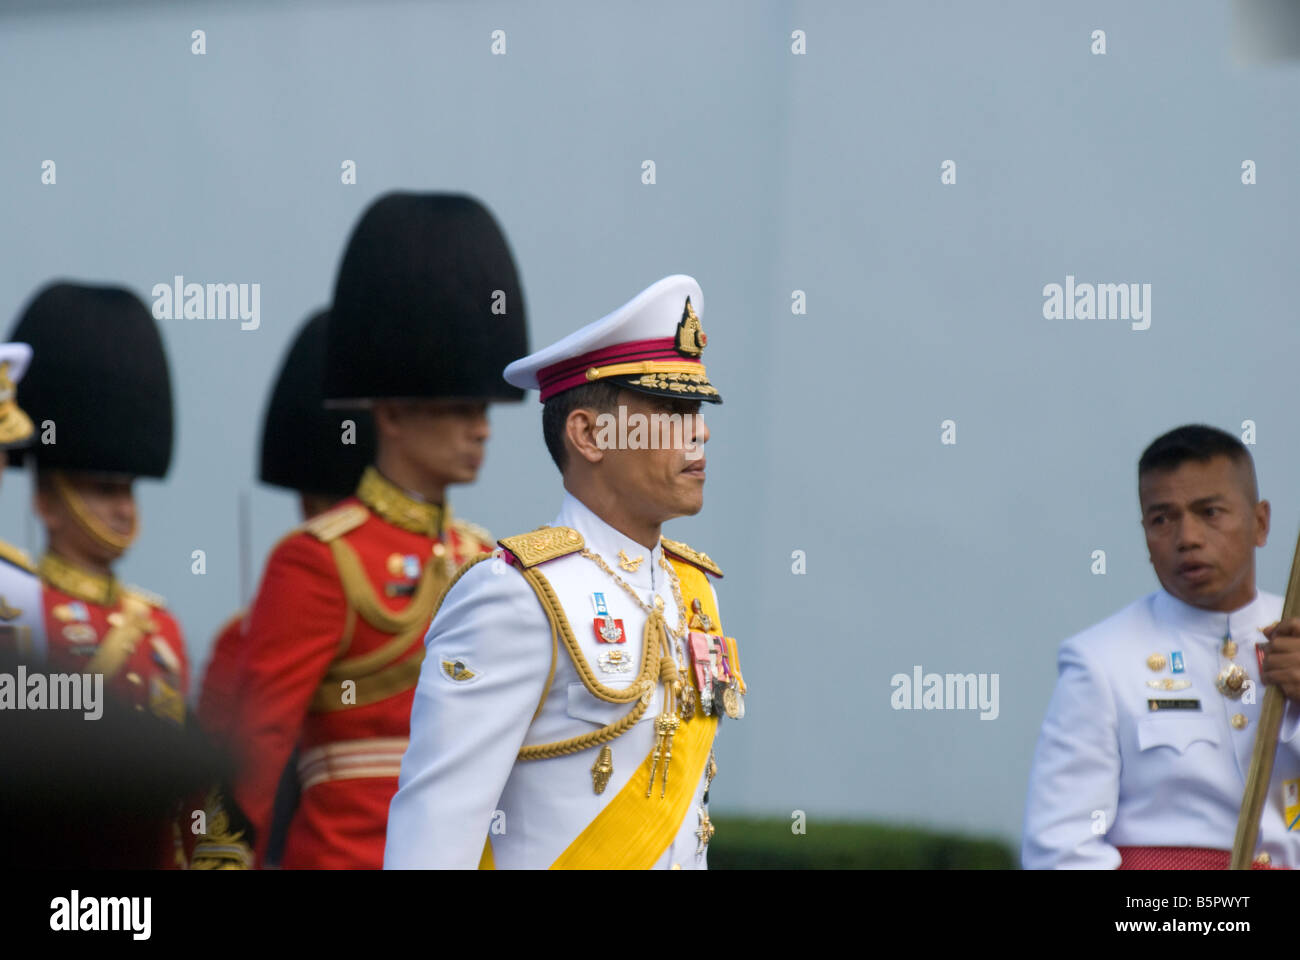 His Royal Highness Prince Maha Vajiralongkorn the Crown Prince of Thailand Stock Photo